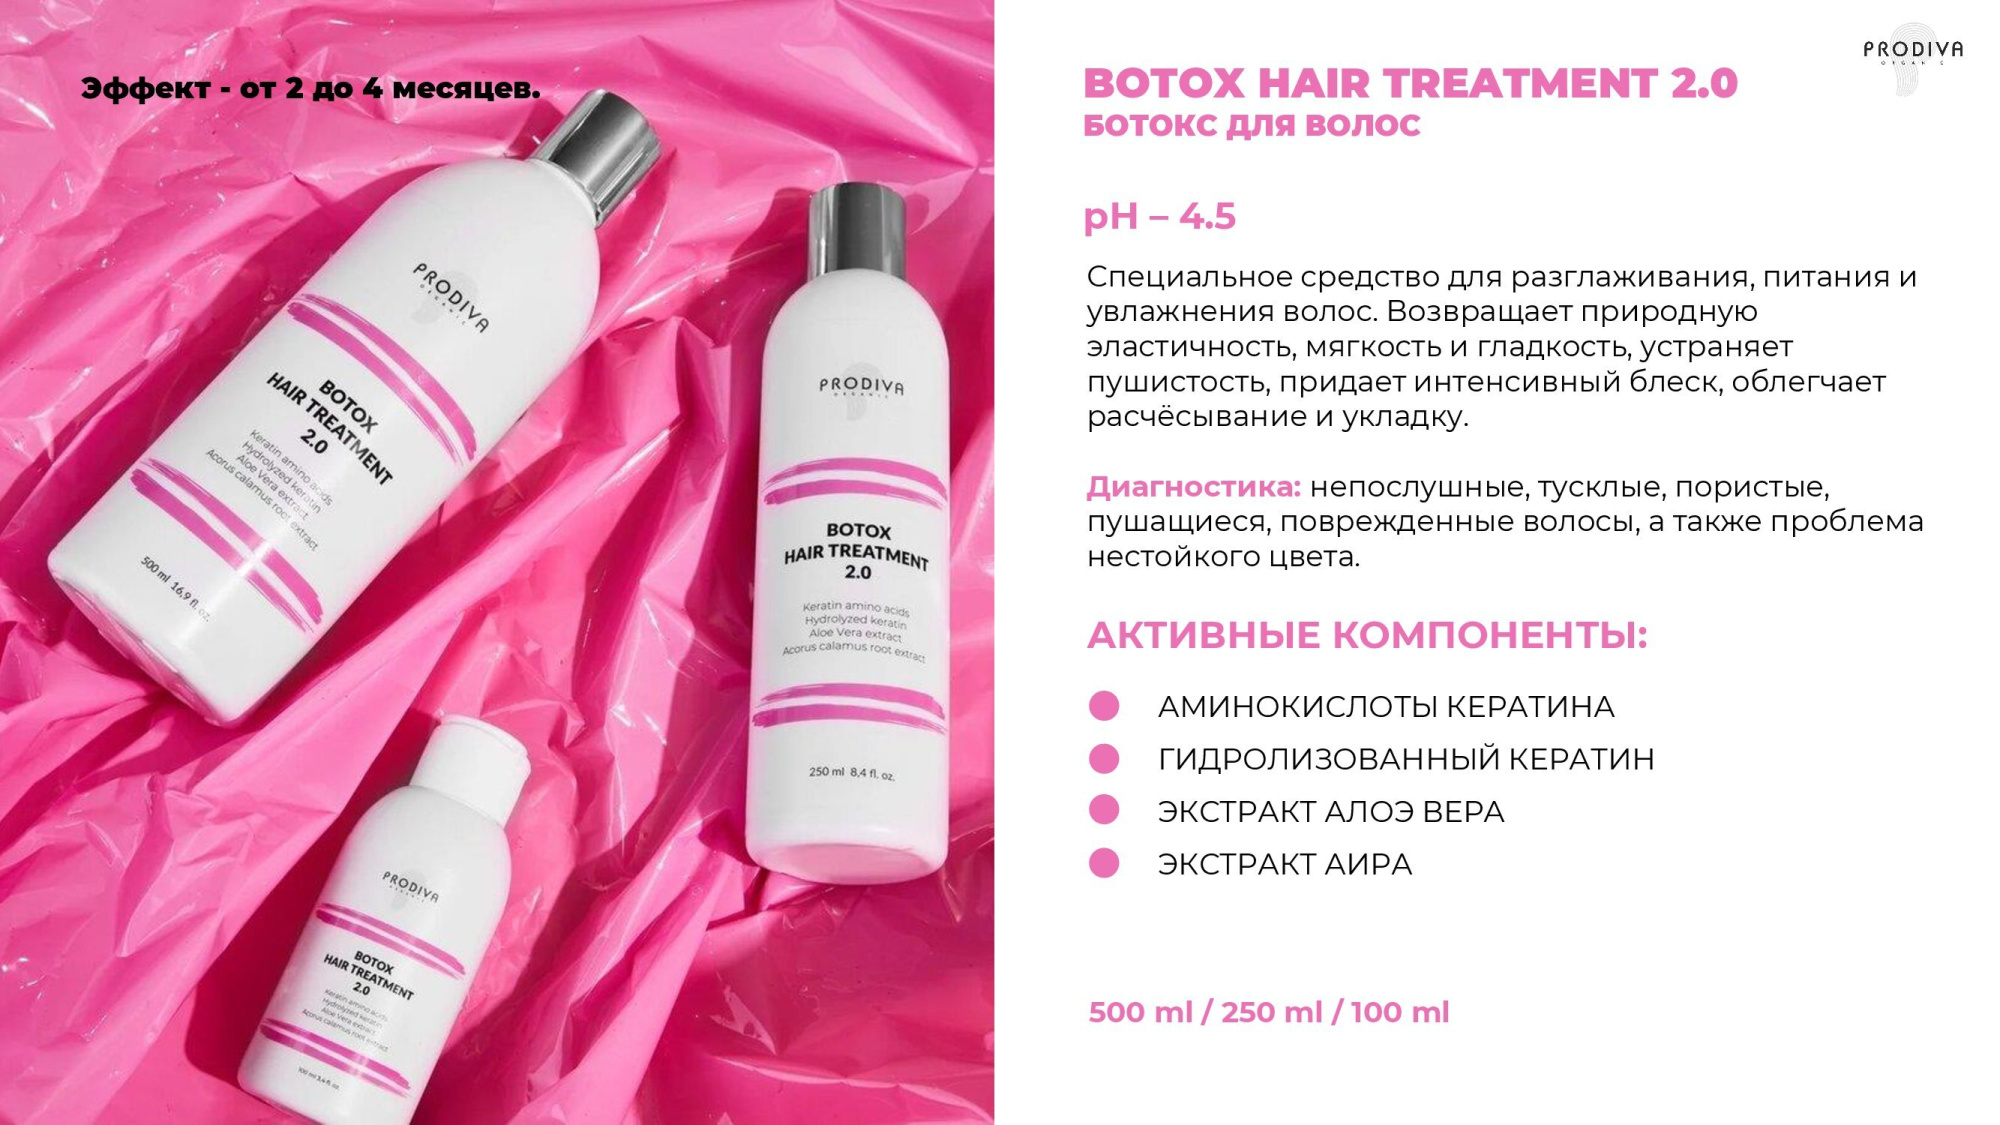 Глянцевый ботокс для волос PRODIVA Botox Hair Treatment 2.0, 500 мл